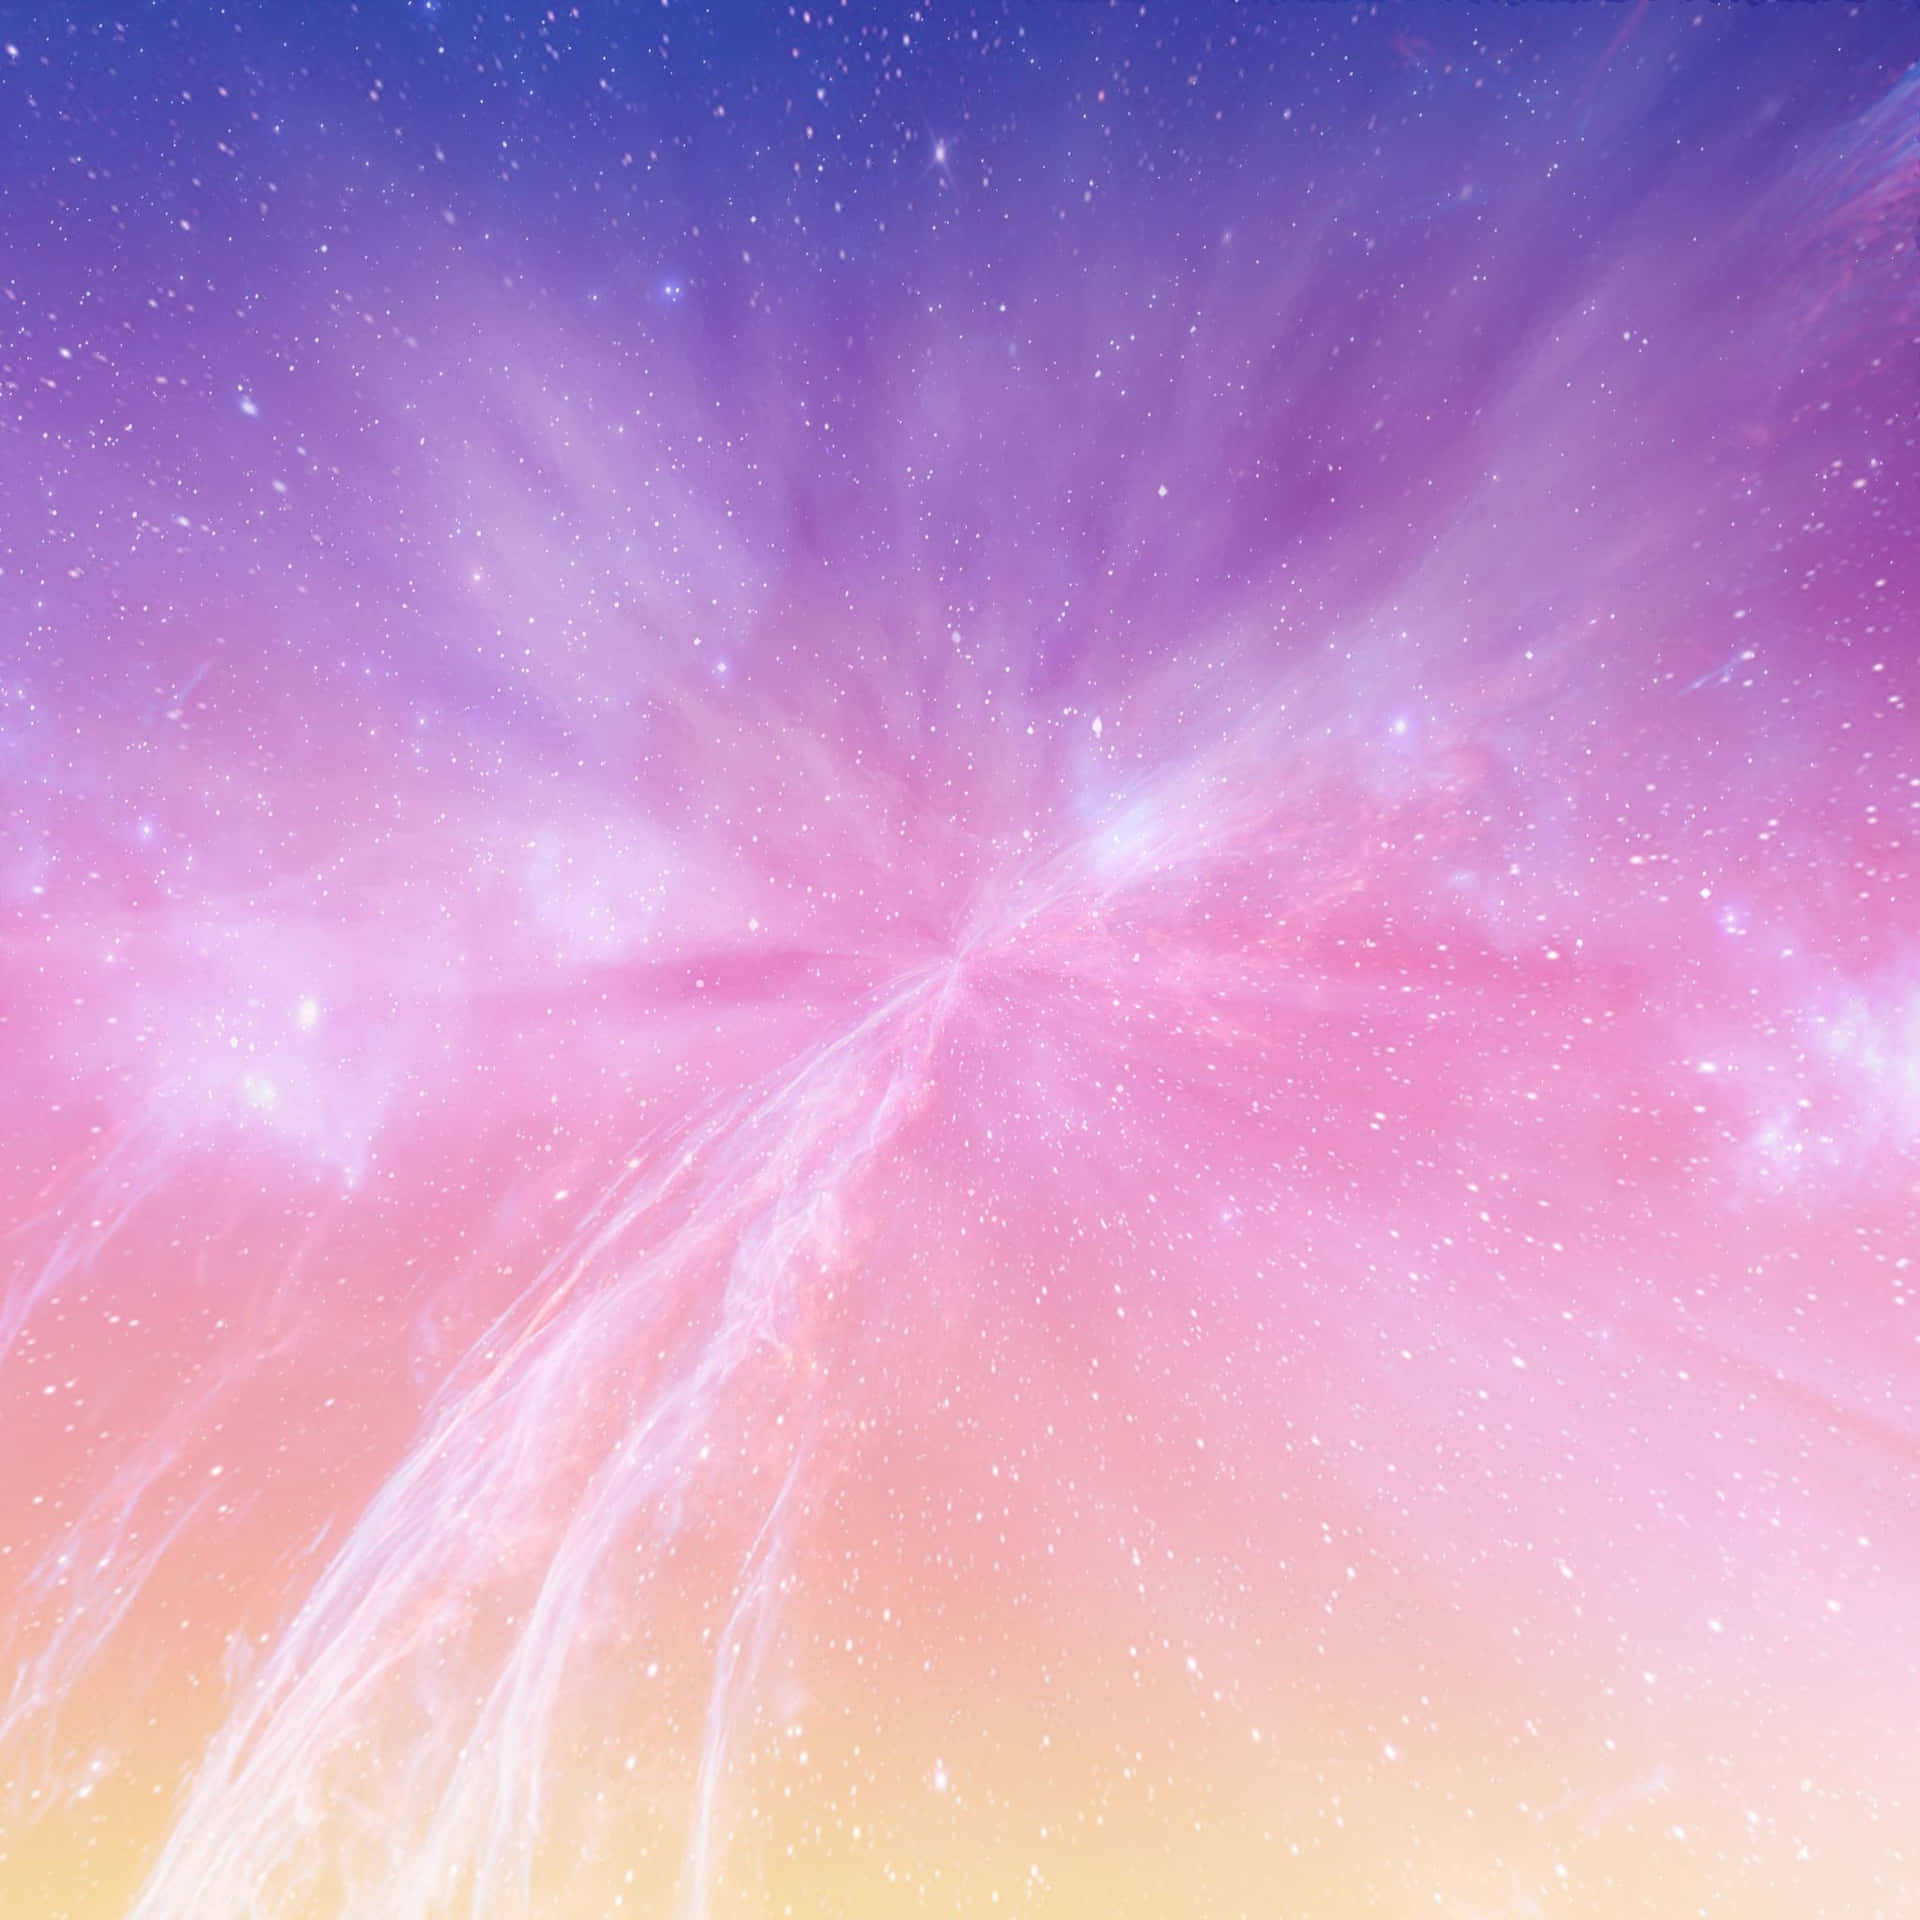 Sumérgeteen Un Mundo De Hermosos Pasteles Y Explora La Adorable Galaxia Pastel. Fondo de pantalla